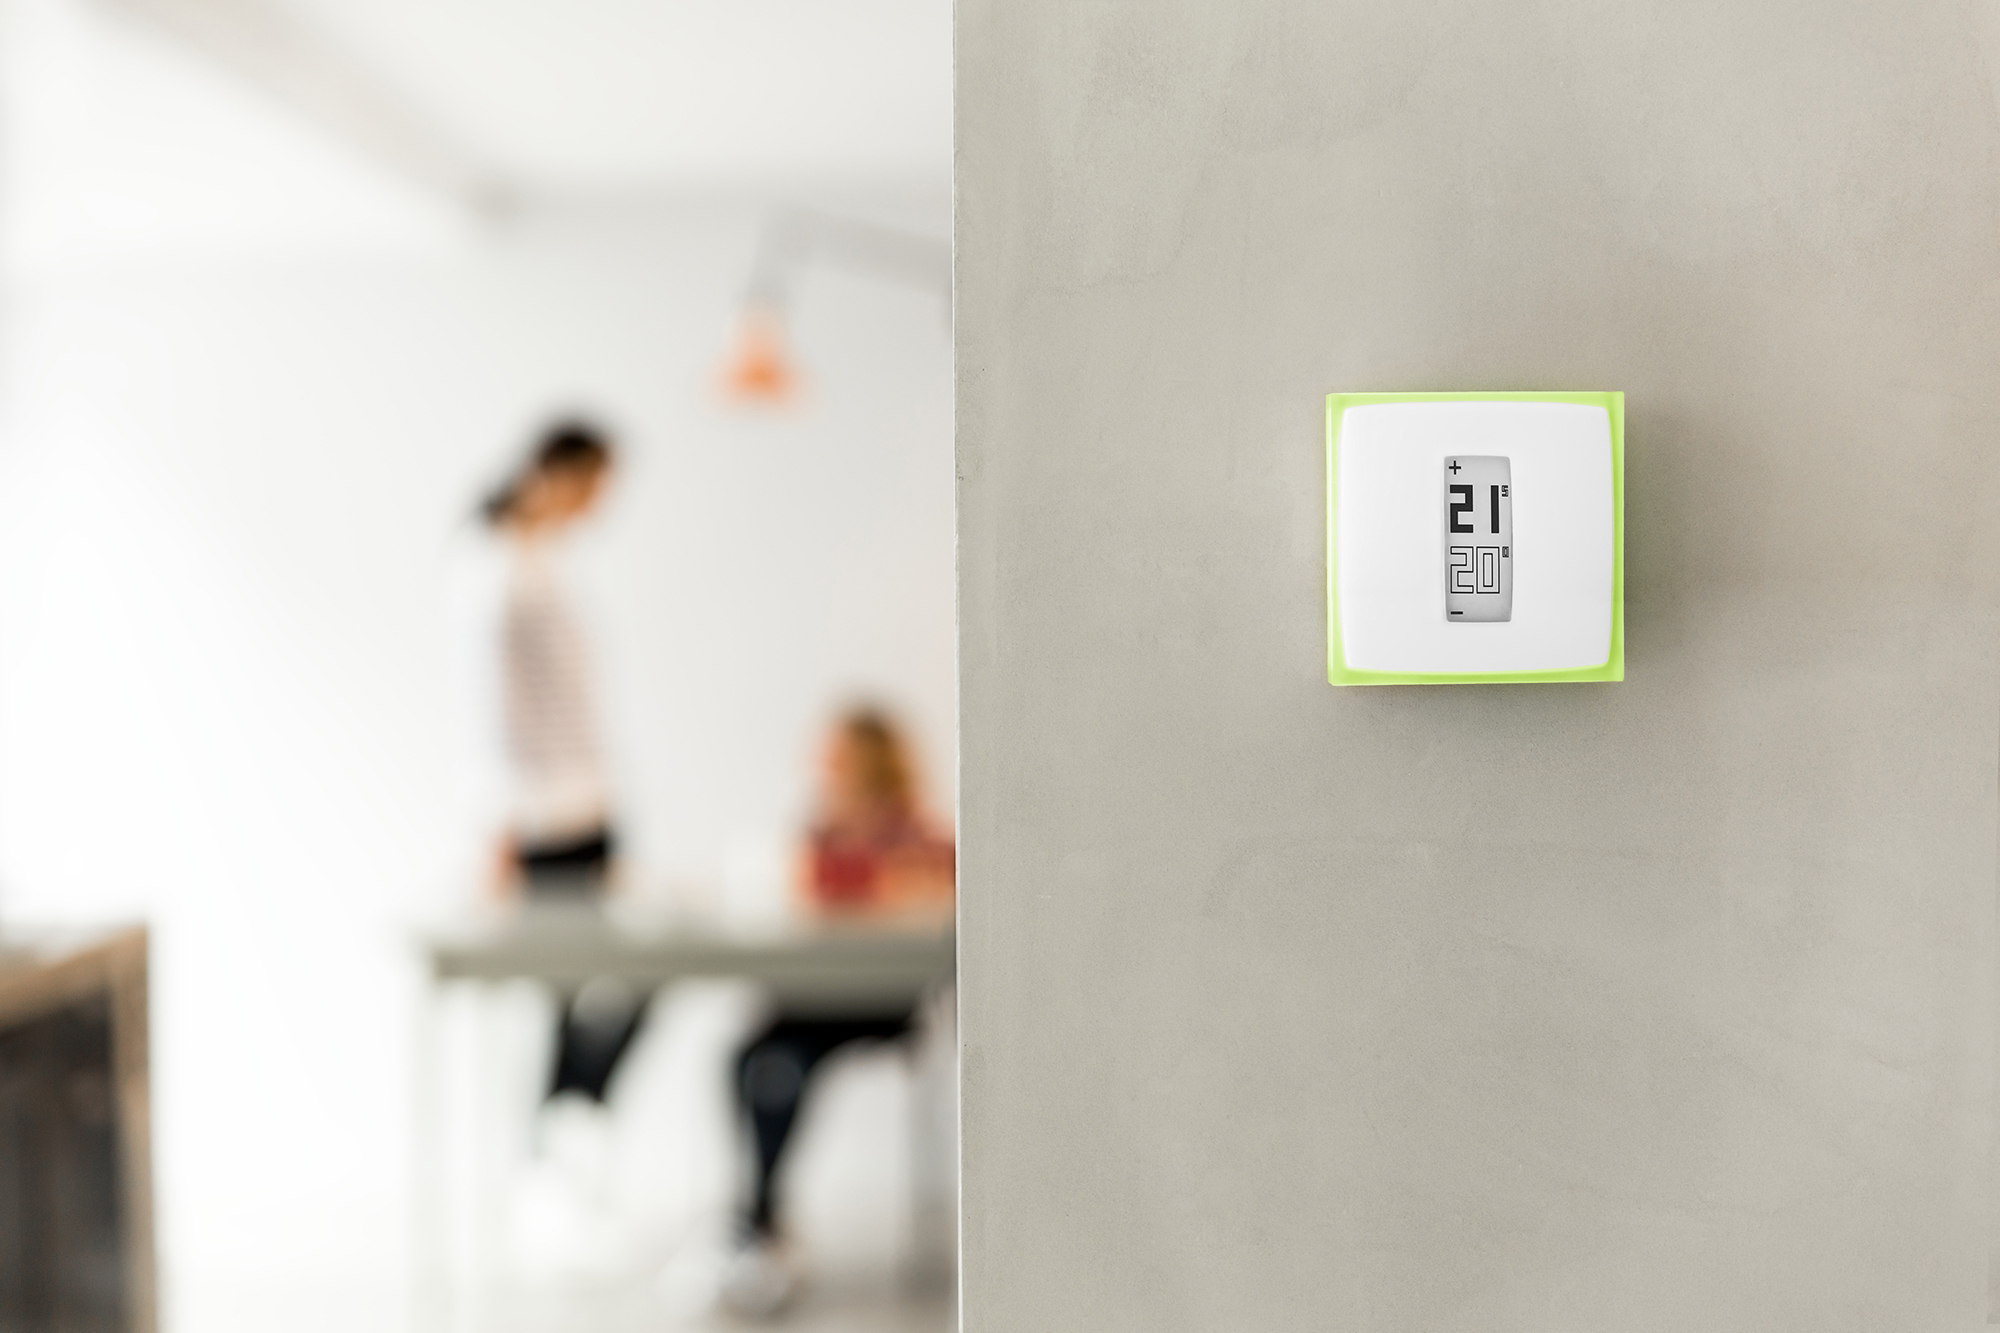 Netatmo propose un nouveau thermostat connecté